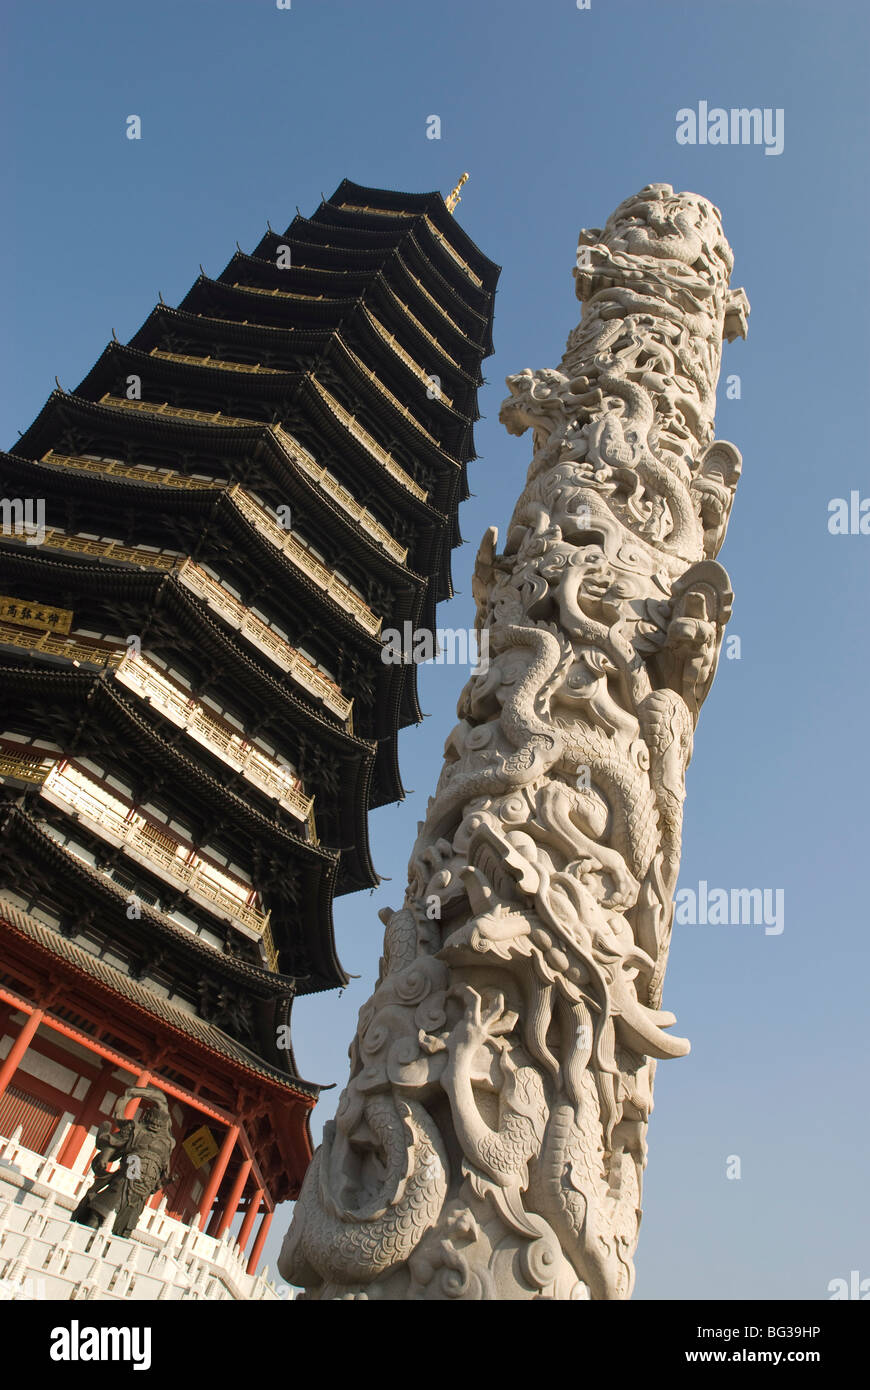 Tianning Pagoda, Changzhou, Jiangsu province, China, Asia Stock Photo